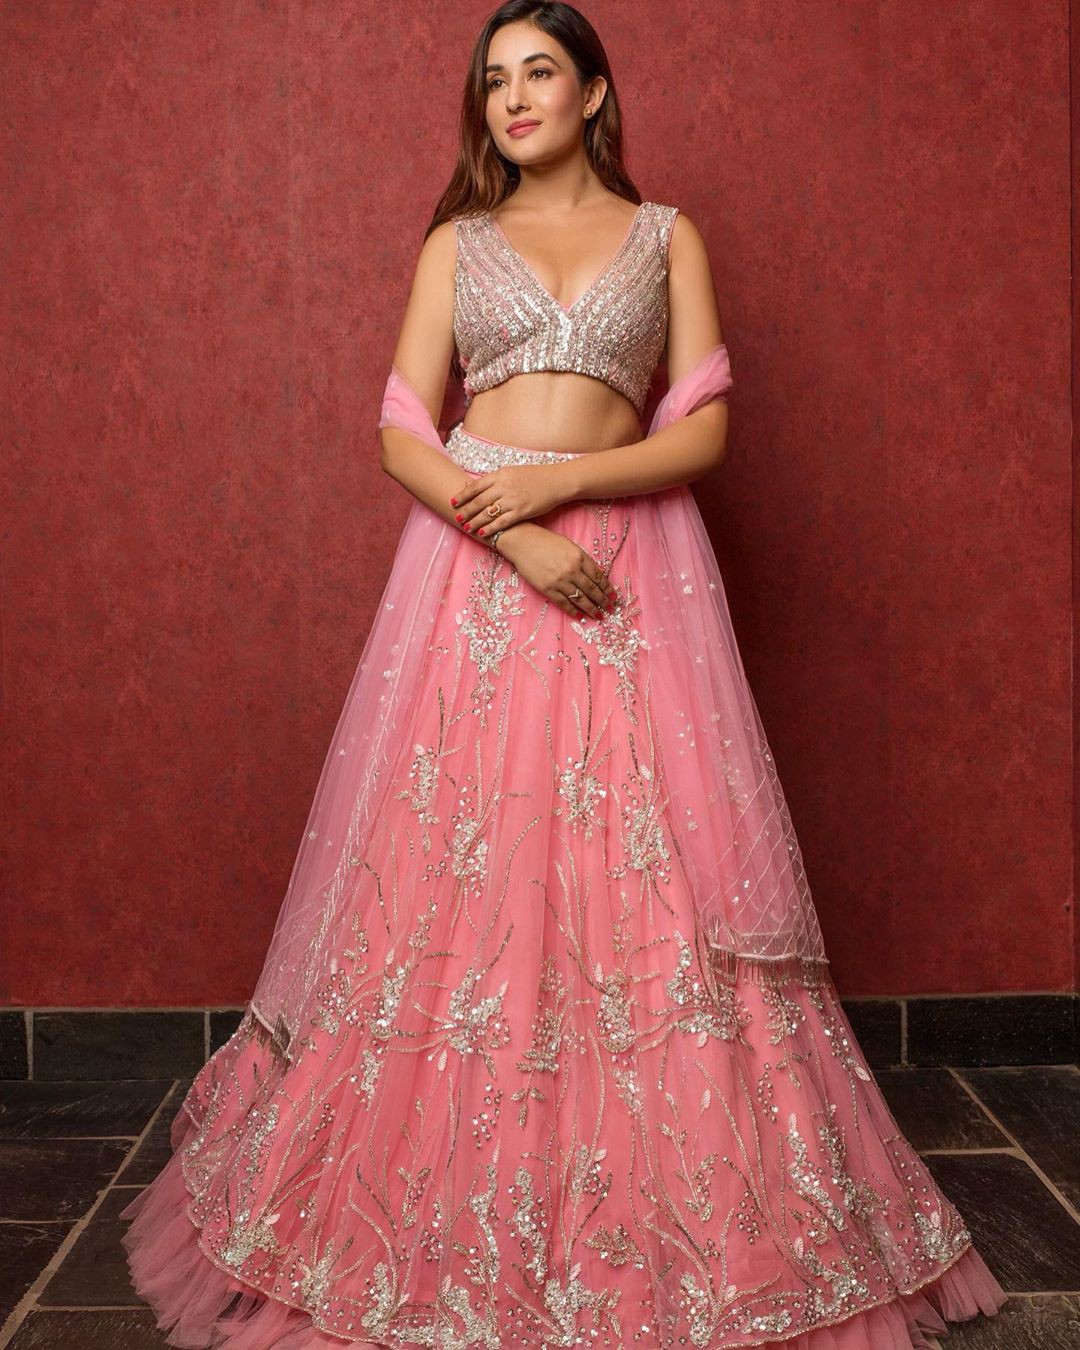 vestido corto aditi budhathoki: Vestido de novia,  Aditi Budhatoki,  Sesión de fotos,  Modelos calientes de Instagram  